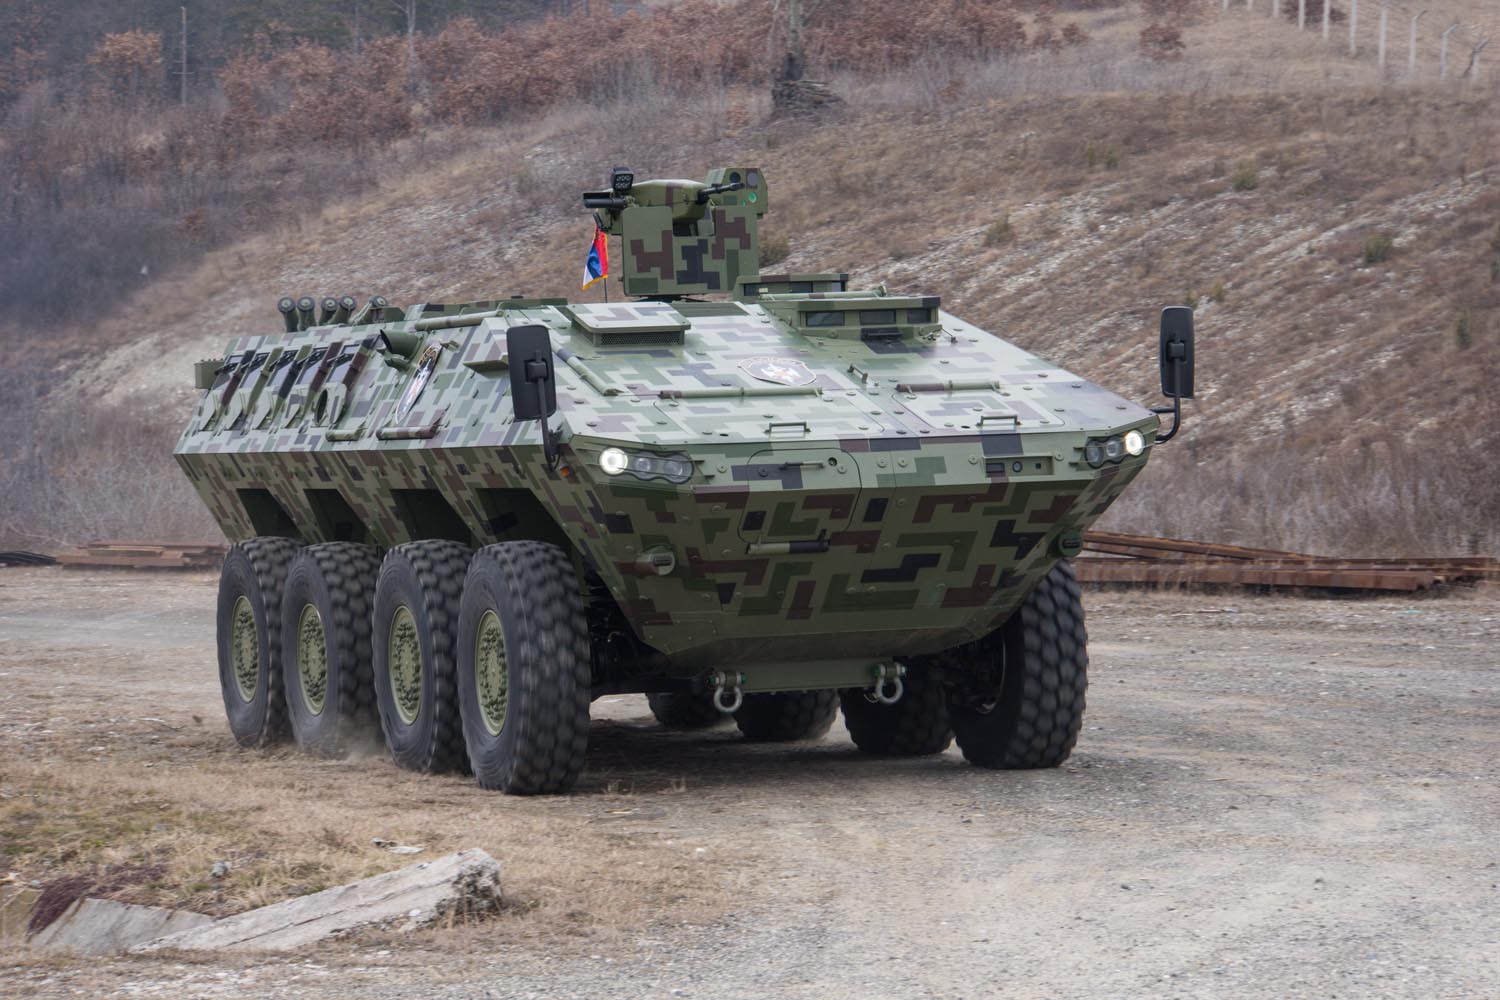 塞尔维亚装甲车,满足自用且实现外销,凸显该国研发实力!